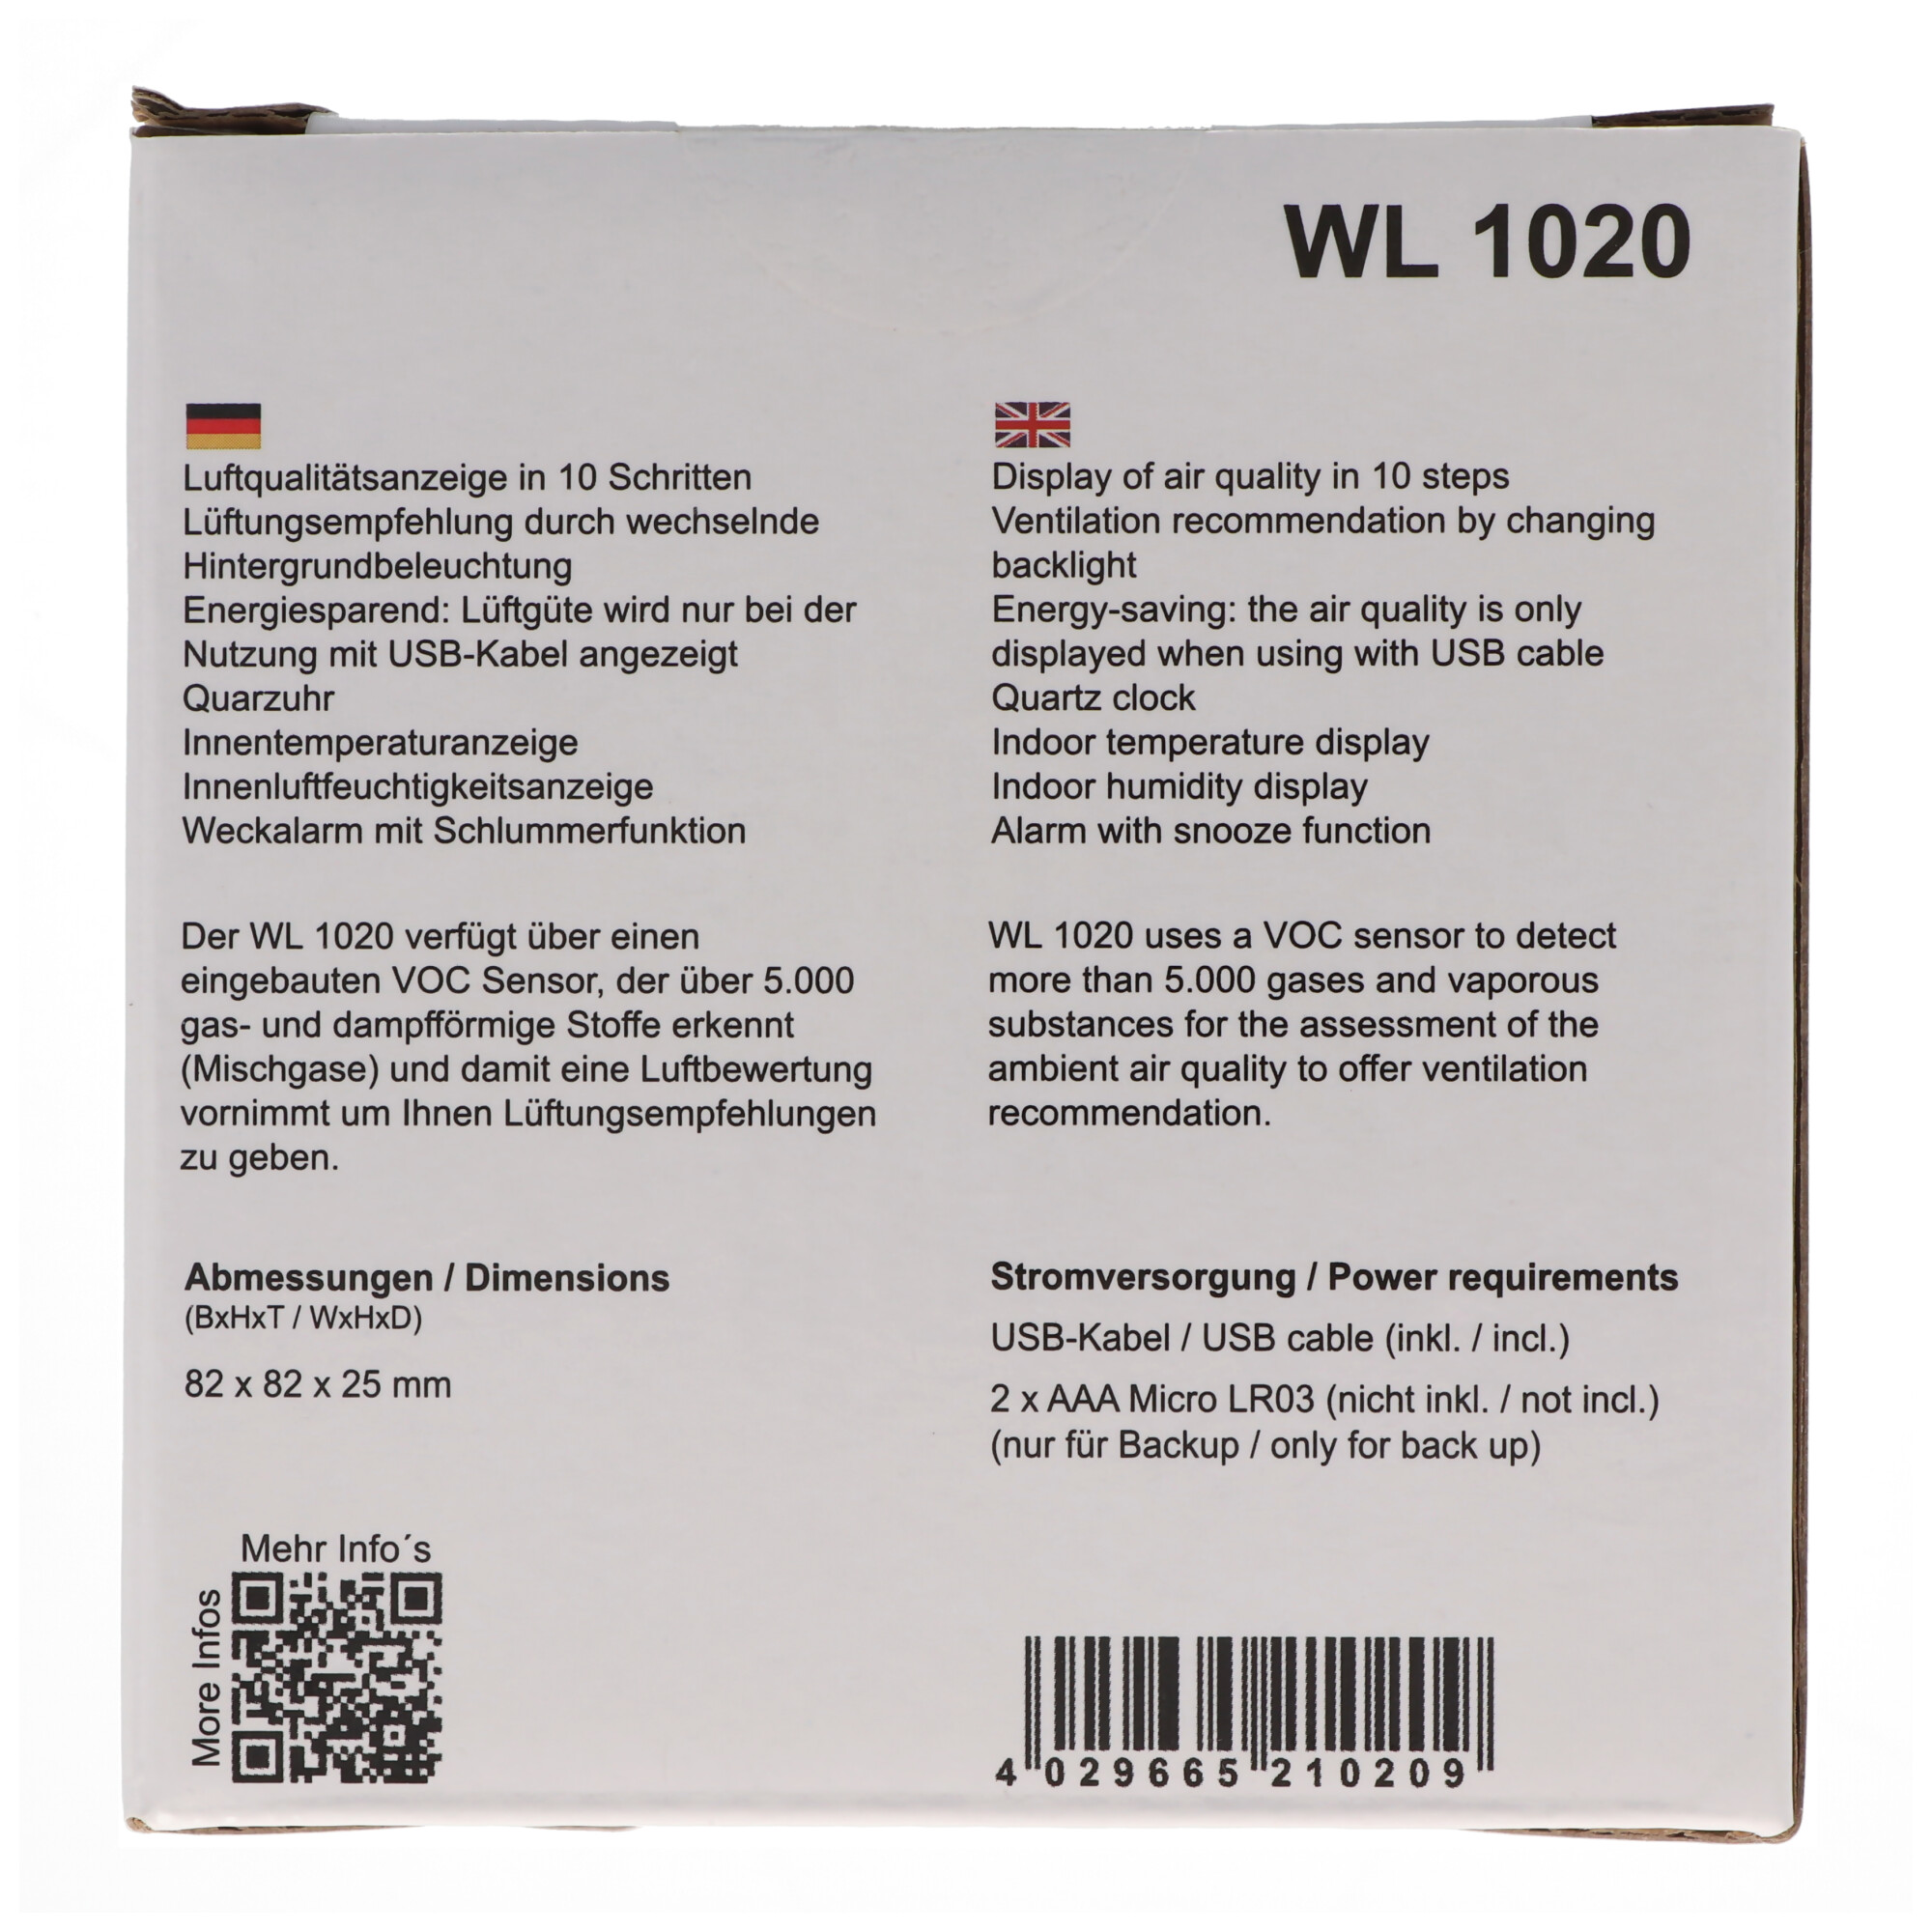 WL 1020 - Luftgütemonitor, Innenluftfeuchtigkeitsanzeige mit Quarzuhr, Anzeige der Lüftgüte durch 5 Sternsymbole in 11 Stufen